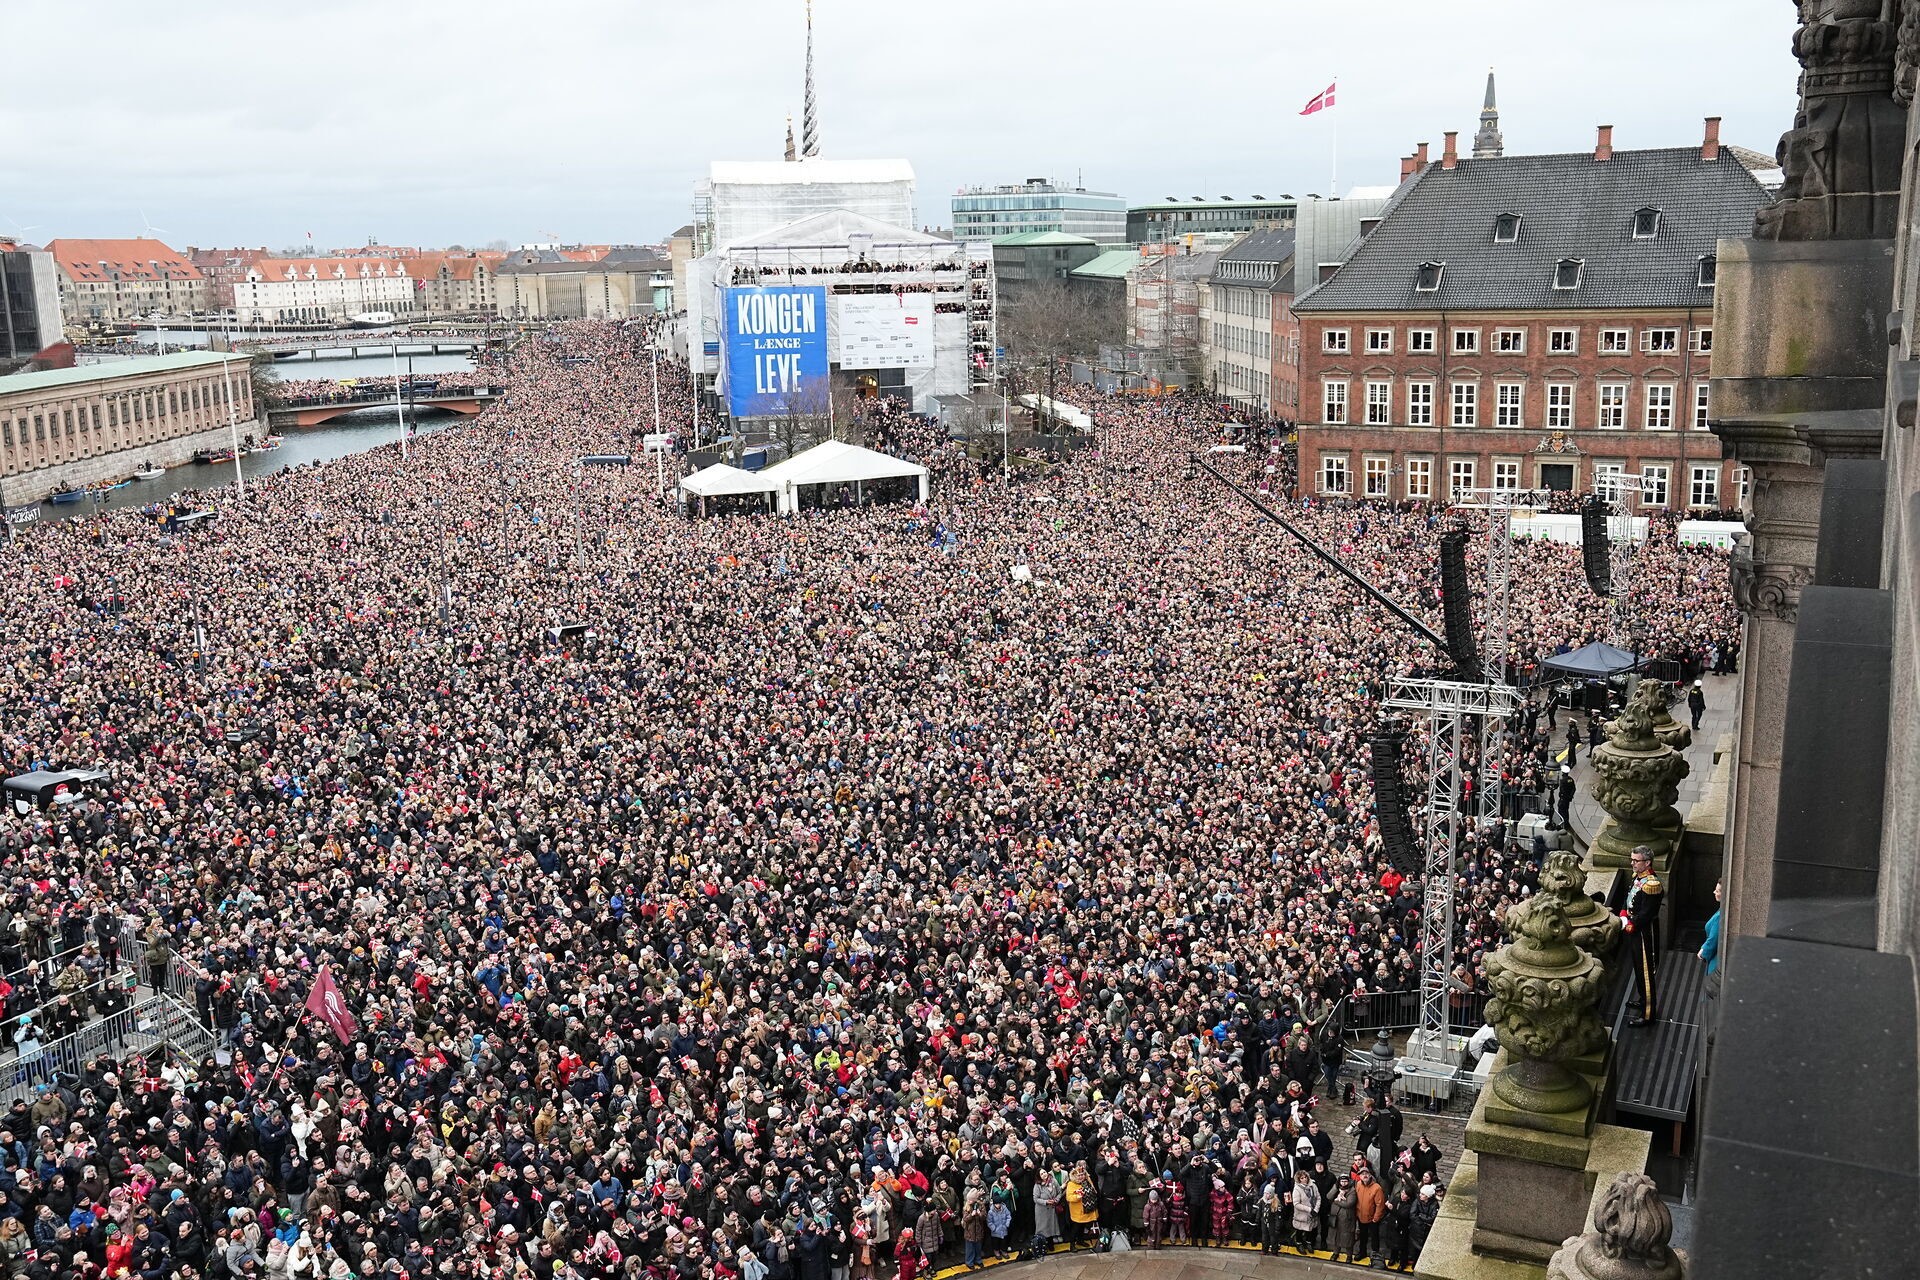 La folla che ha assistito all'avvicendamento sul trono di Danimarca è un ottimo termometro per capire la popolarità della monarchia nel Paese. nonostante il suo stile molto moderno e naturale, l'istituto monarchico è ancora saldamente nei cuori delle persone.